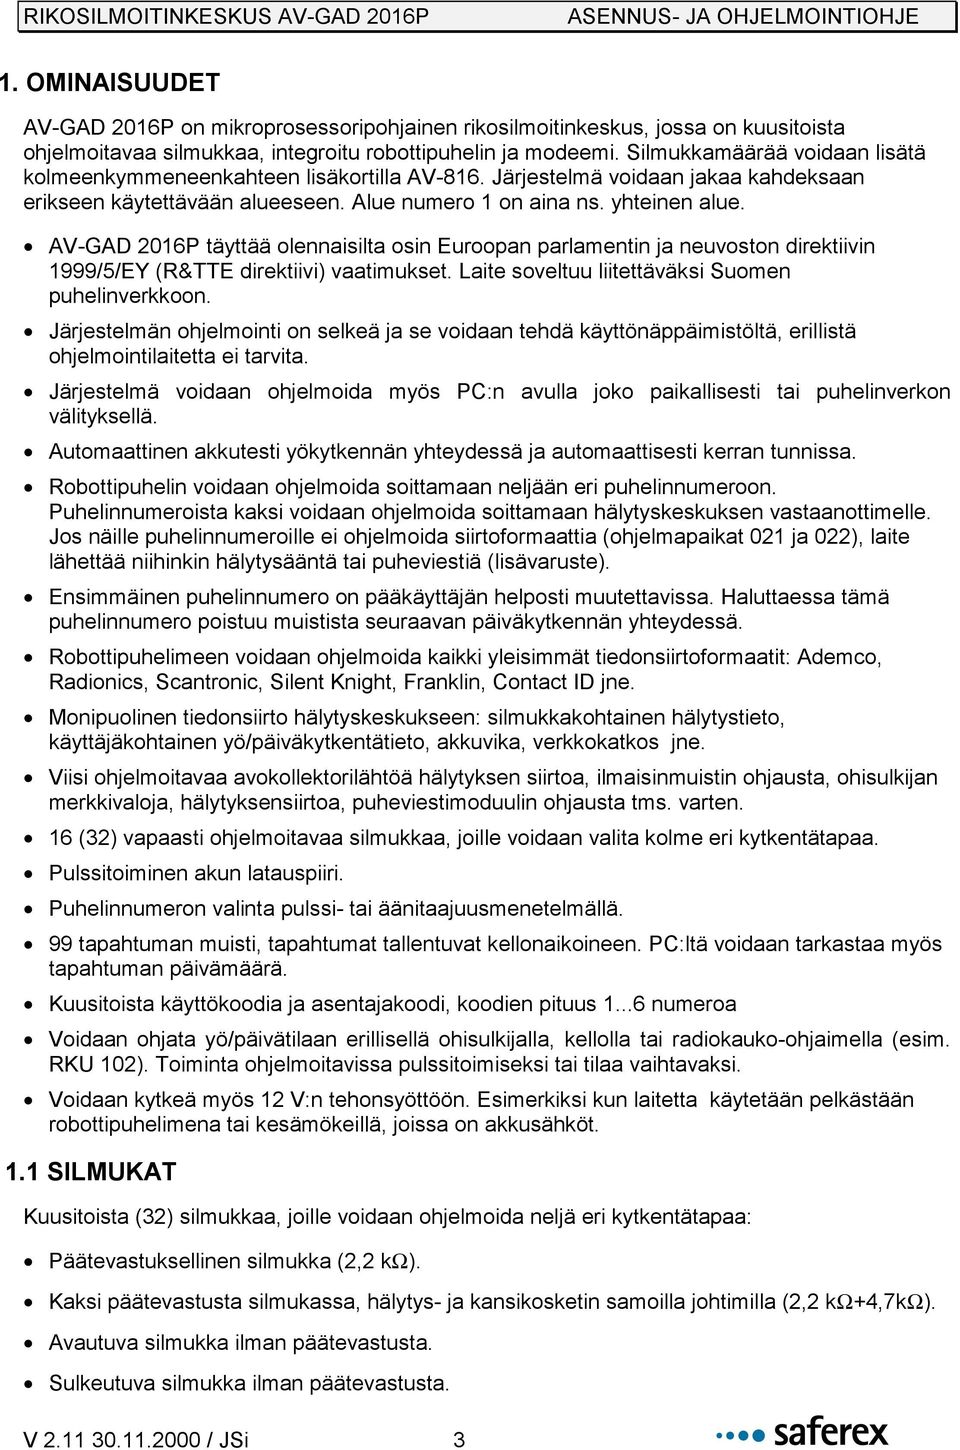 AV-GAD 2016P täyttää olennaisilta osin Euroopan parlamentin ja neuvoston direktiivin 1999/5/EY (R&TTE direktiivi) vaatimukset. Laite soveltuu liitettäväksi Suomen puhelinverkkoon.